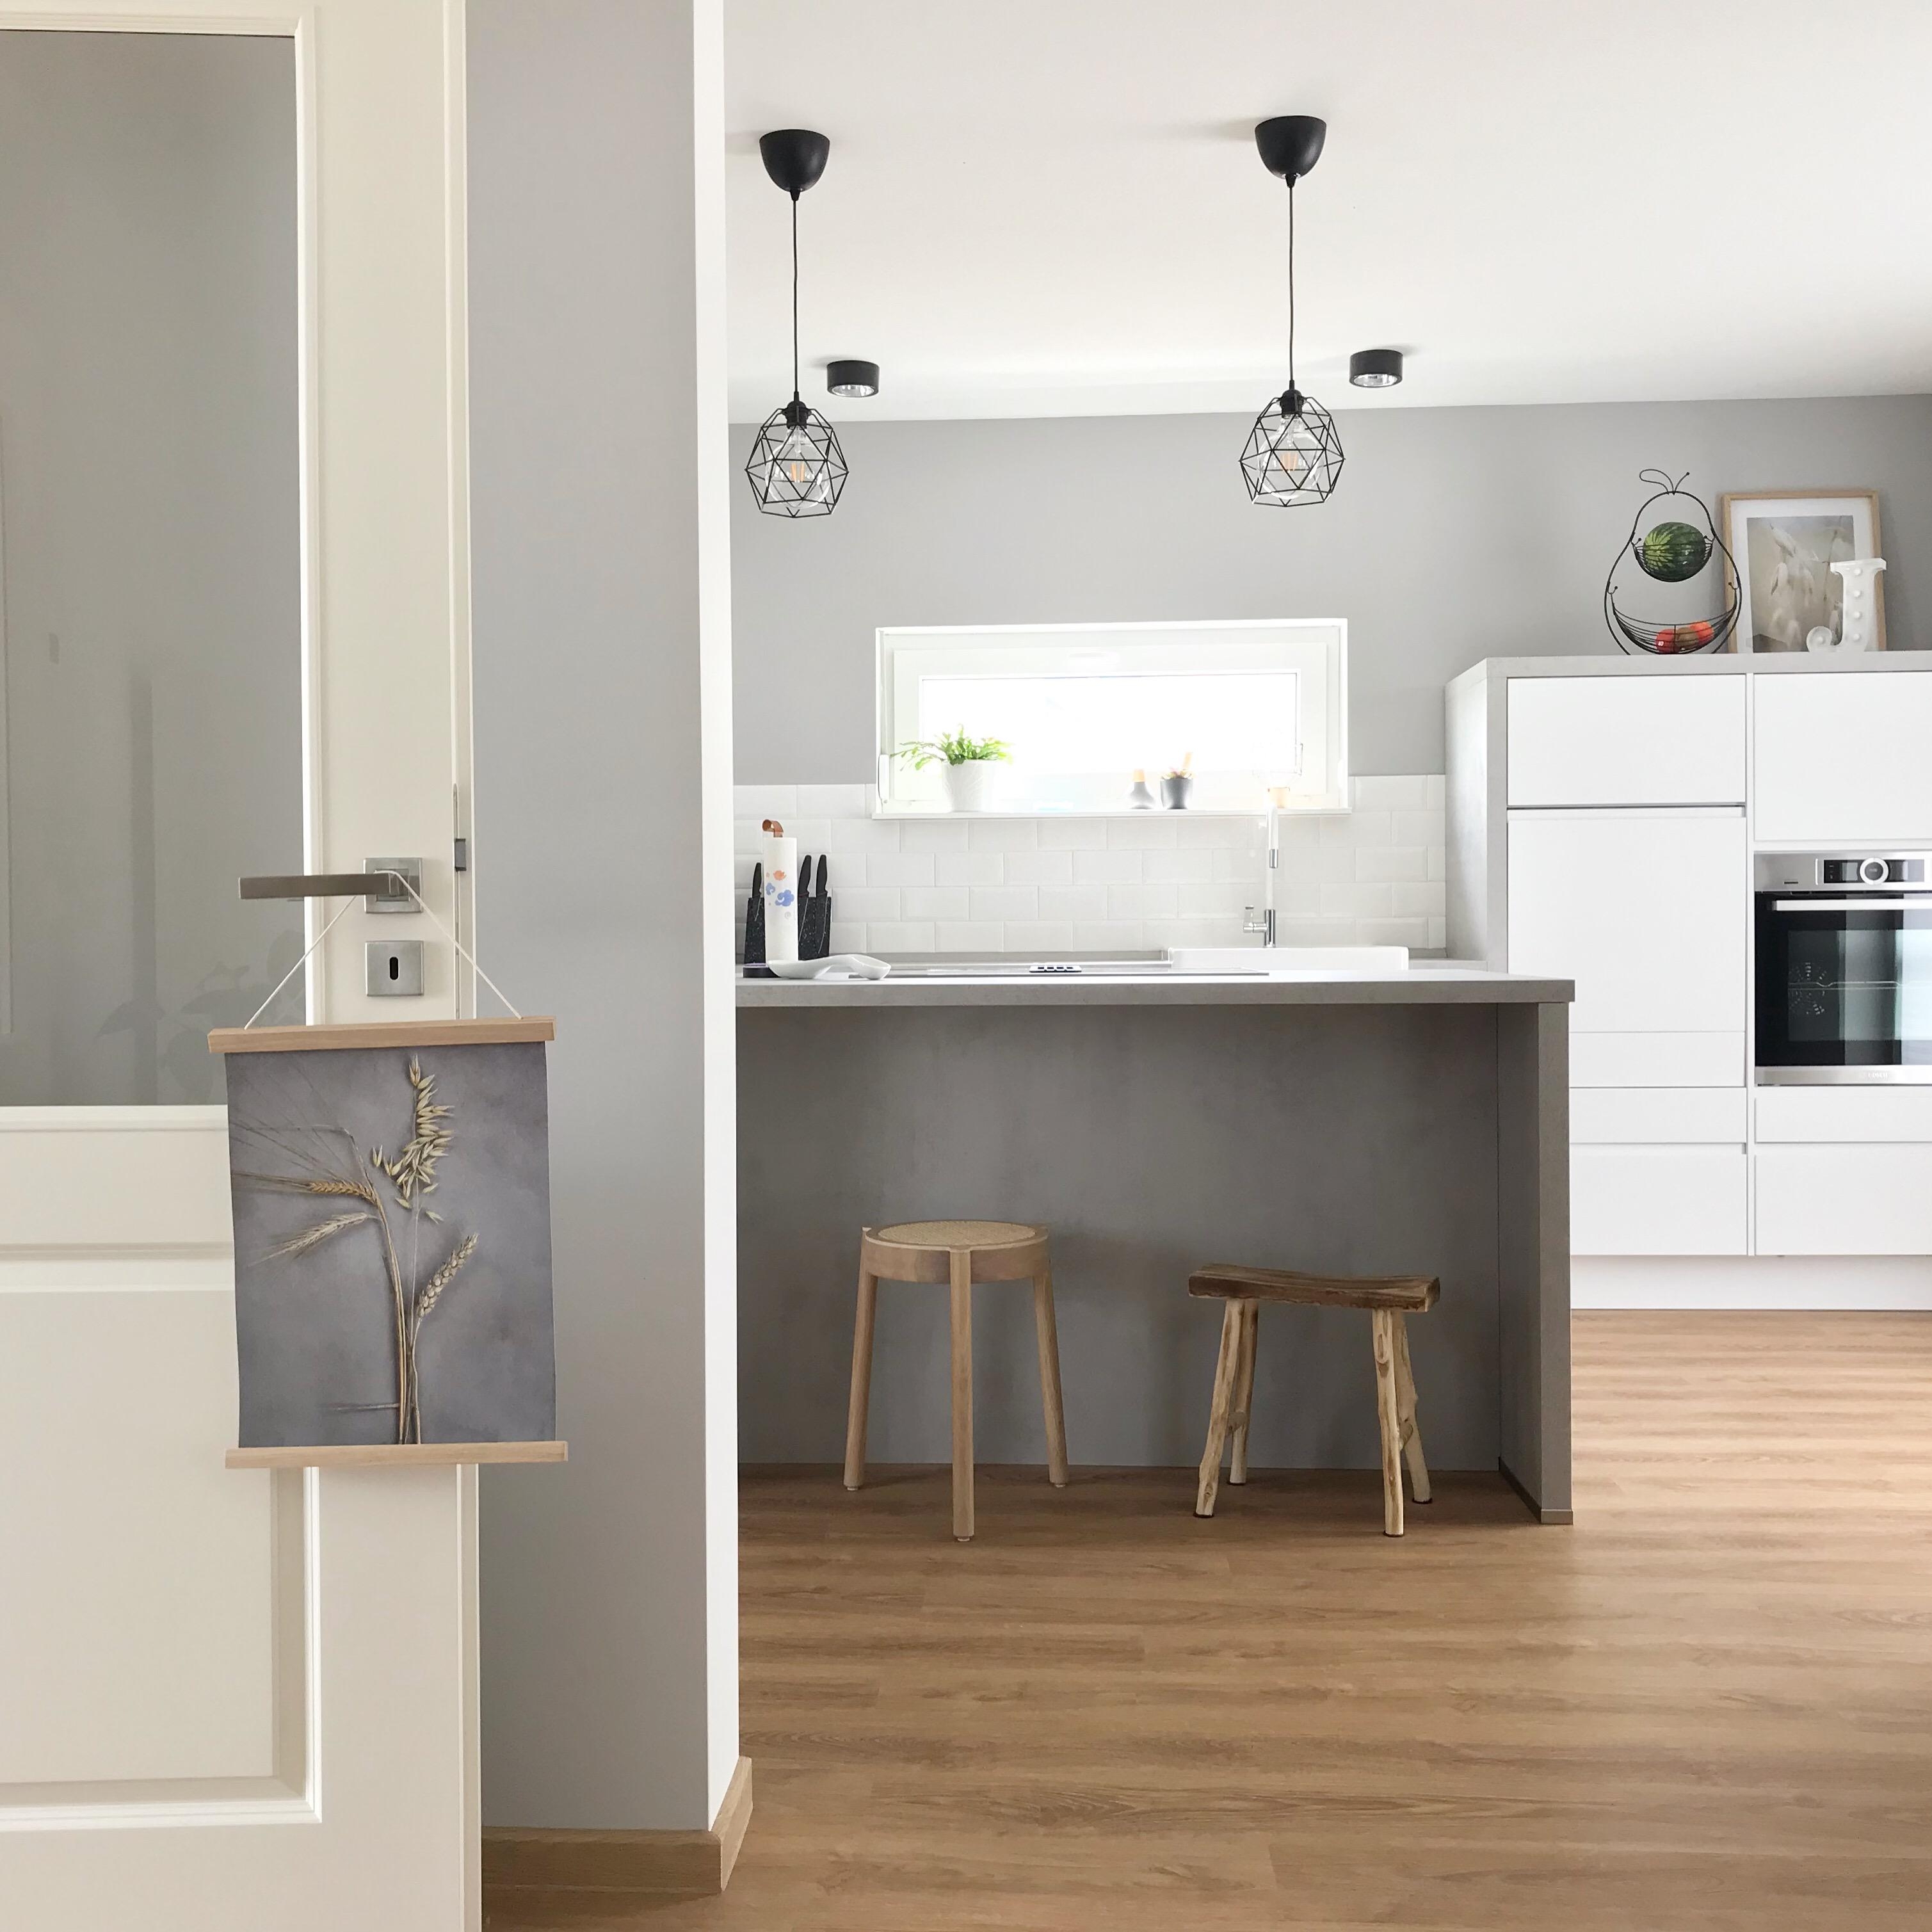 #scandistyle #livingchallenge 
Die Küche ist schon so richtig schön skandinavisch bei uns, die anderen Räume folgen 🌿 